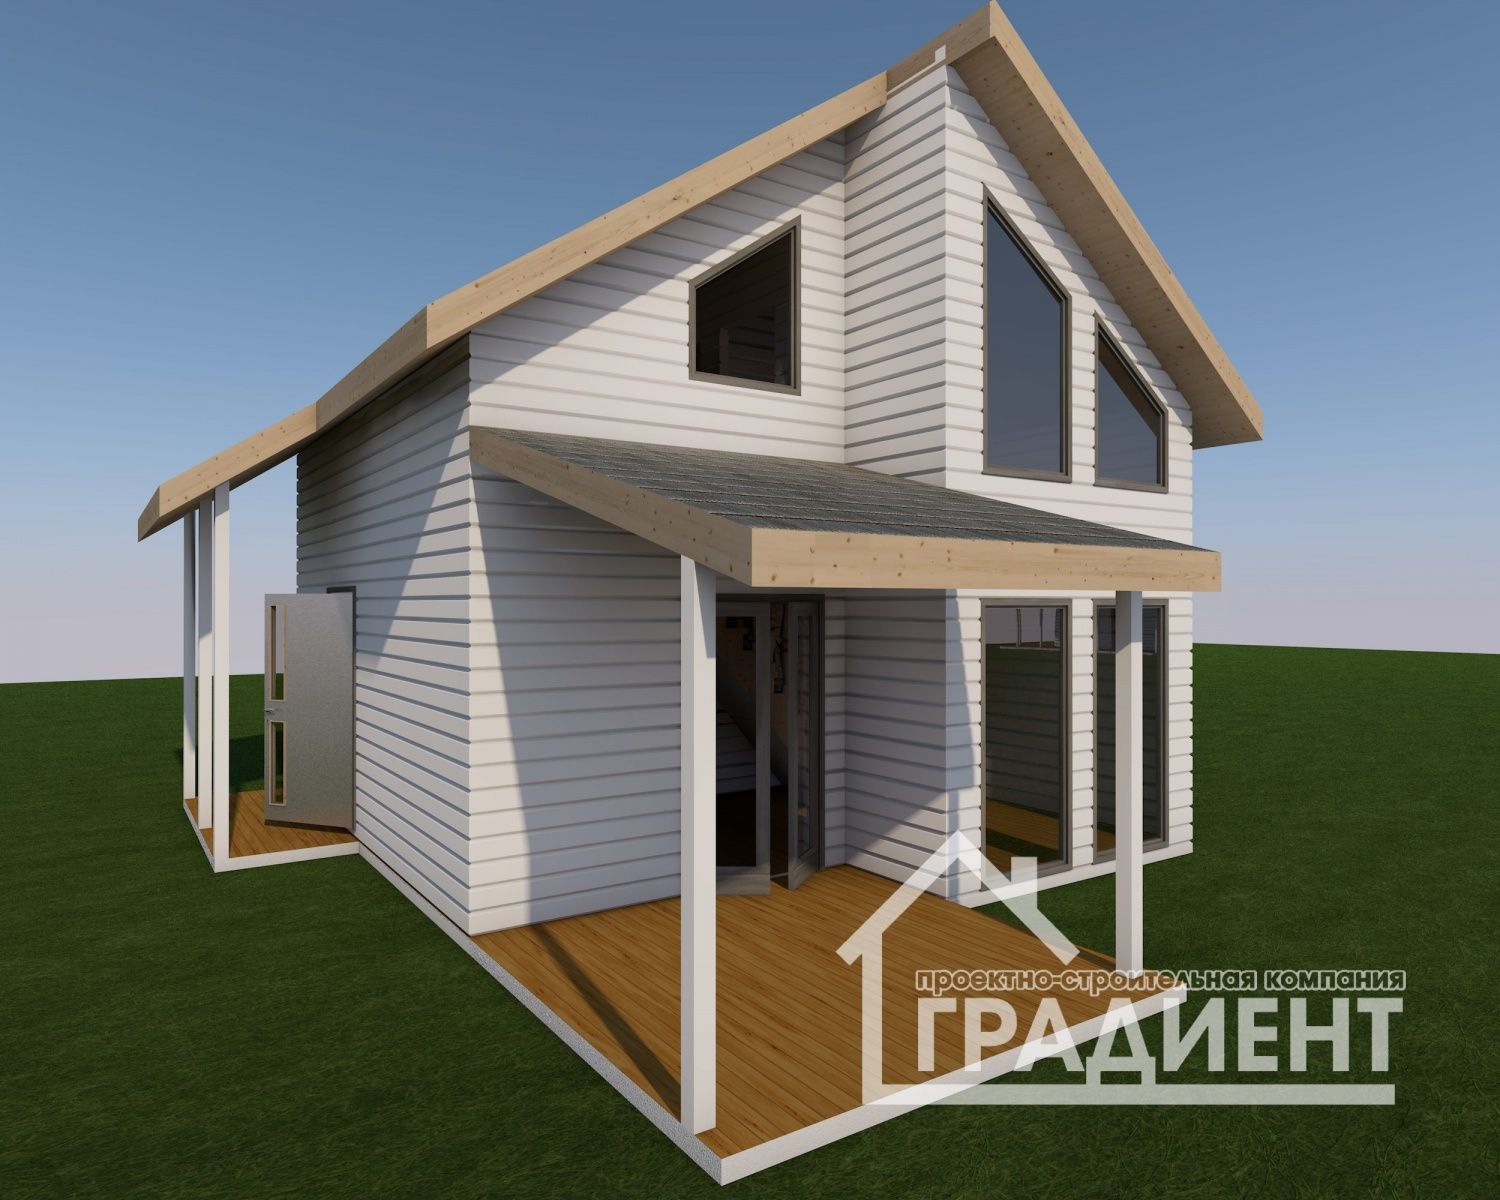 Начинаем монтаж каркасного дома для сезонного проживания в Красноярском районе. Фундамент монолитные армированные сваи.